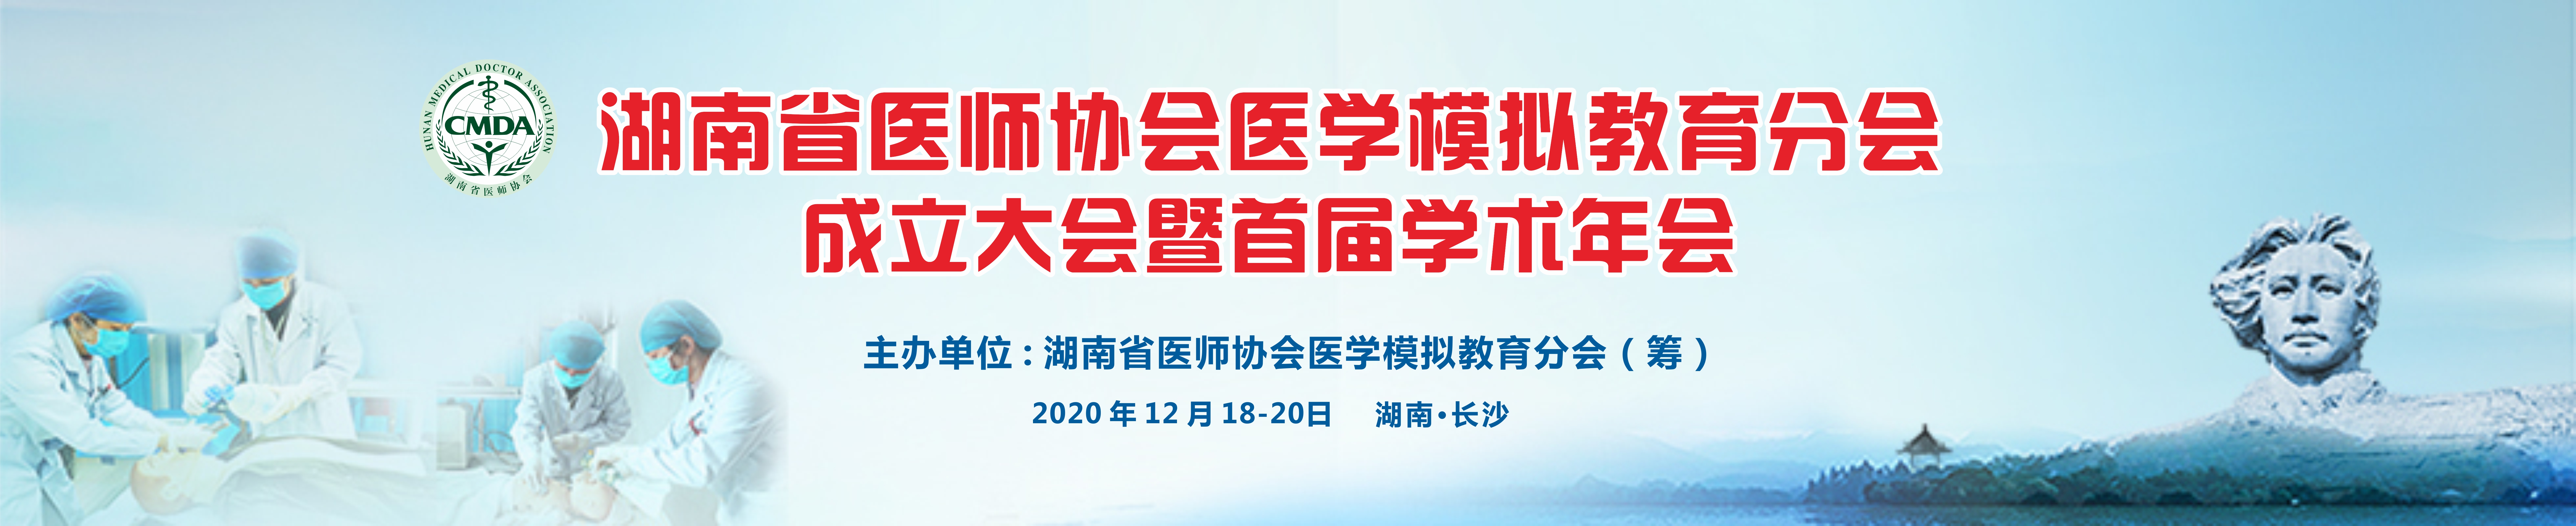 湖南省医师协会医学模拟教育分会成立大会暨首届学术年会会议